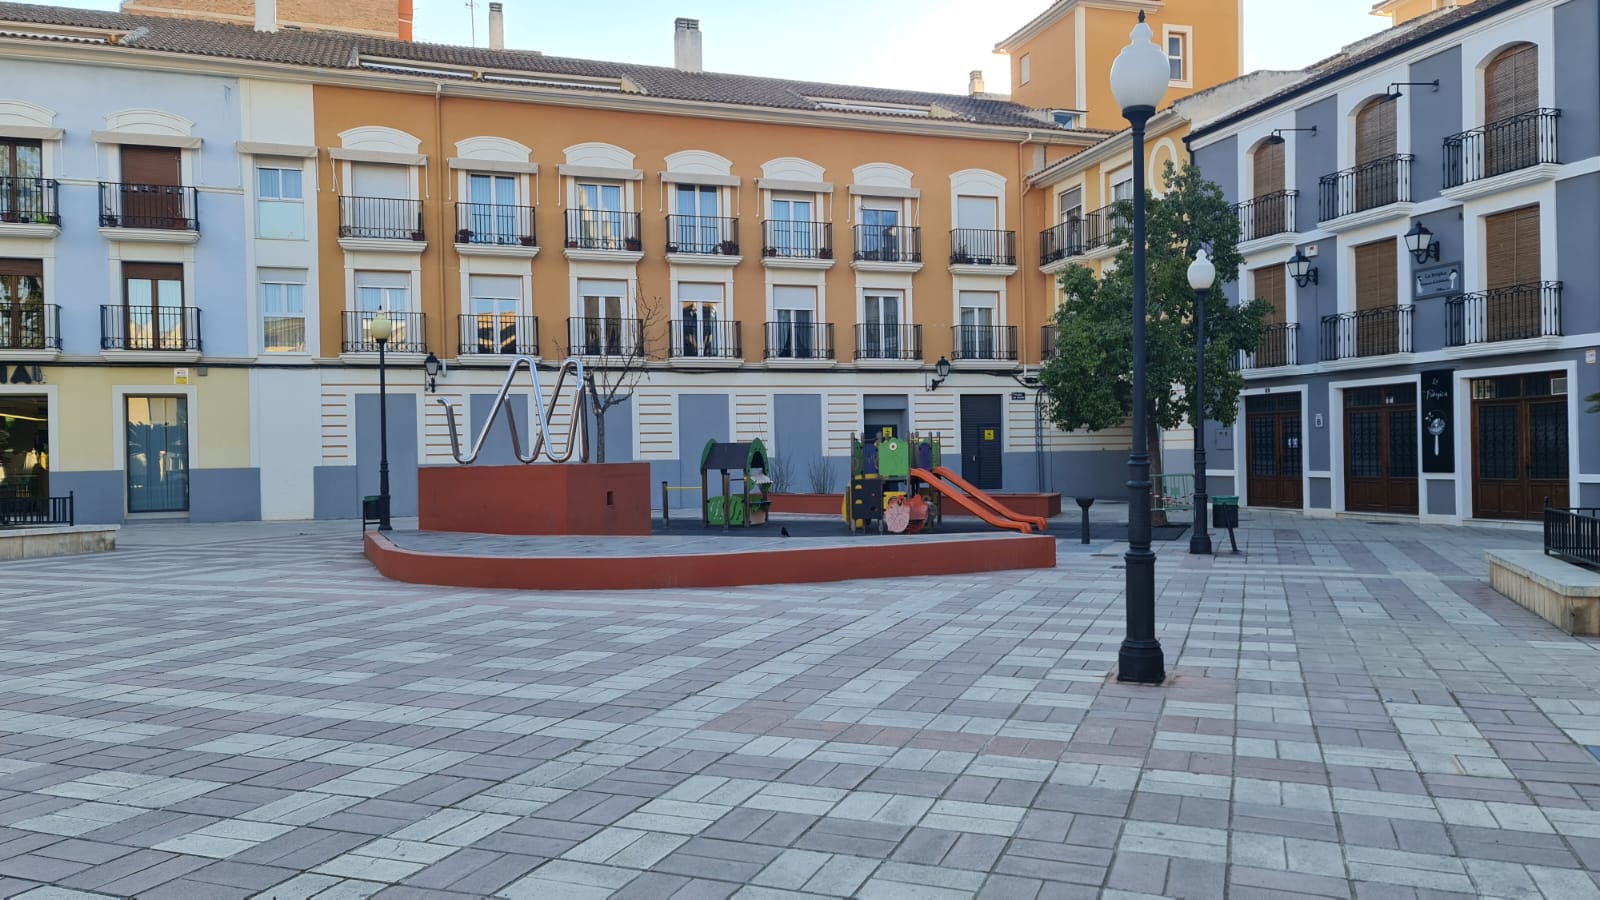 El pleno de marzo refrendará los proyectos de mejora urbanística en La Morenica, Plaza de las Malvas y varios caminos rurales